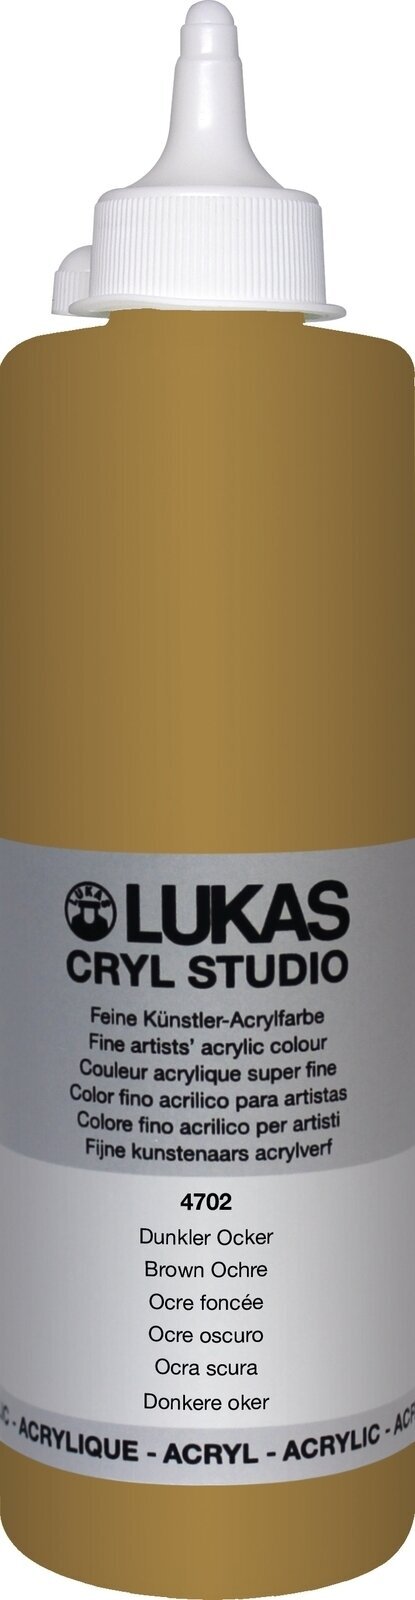 Akrylová barva Lukas Cryl Studio Akrylová barva 500 ml Brown Ochre